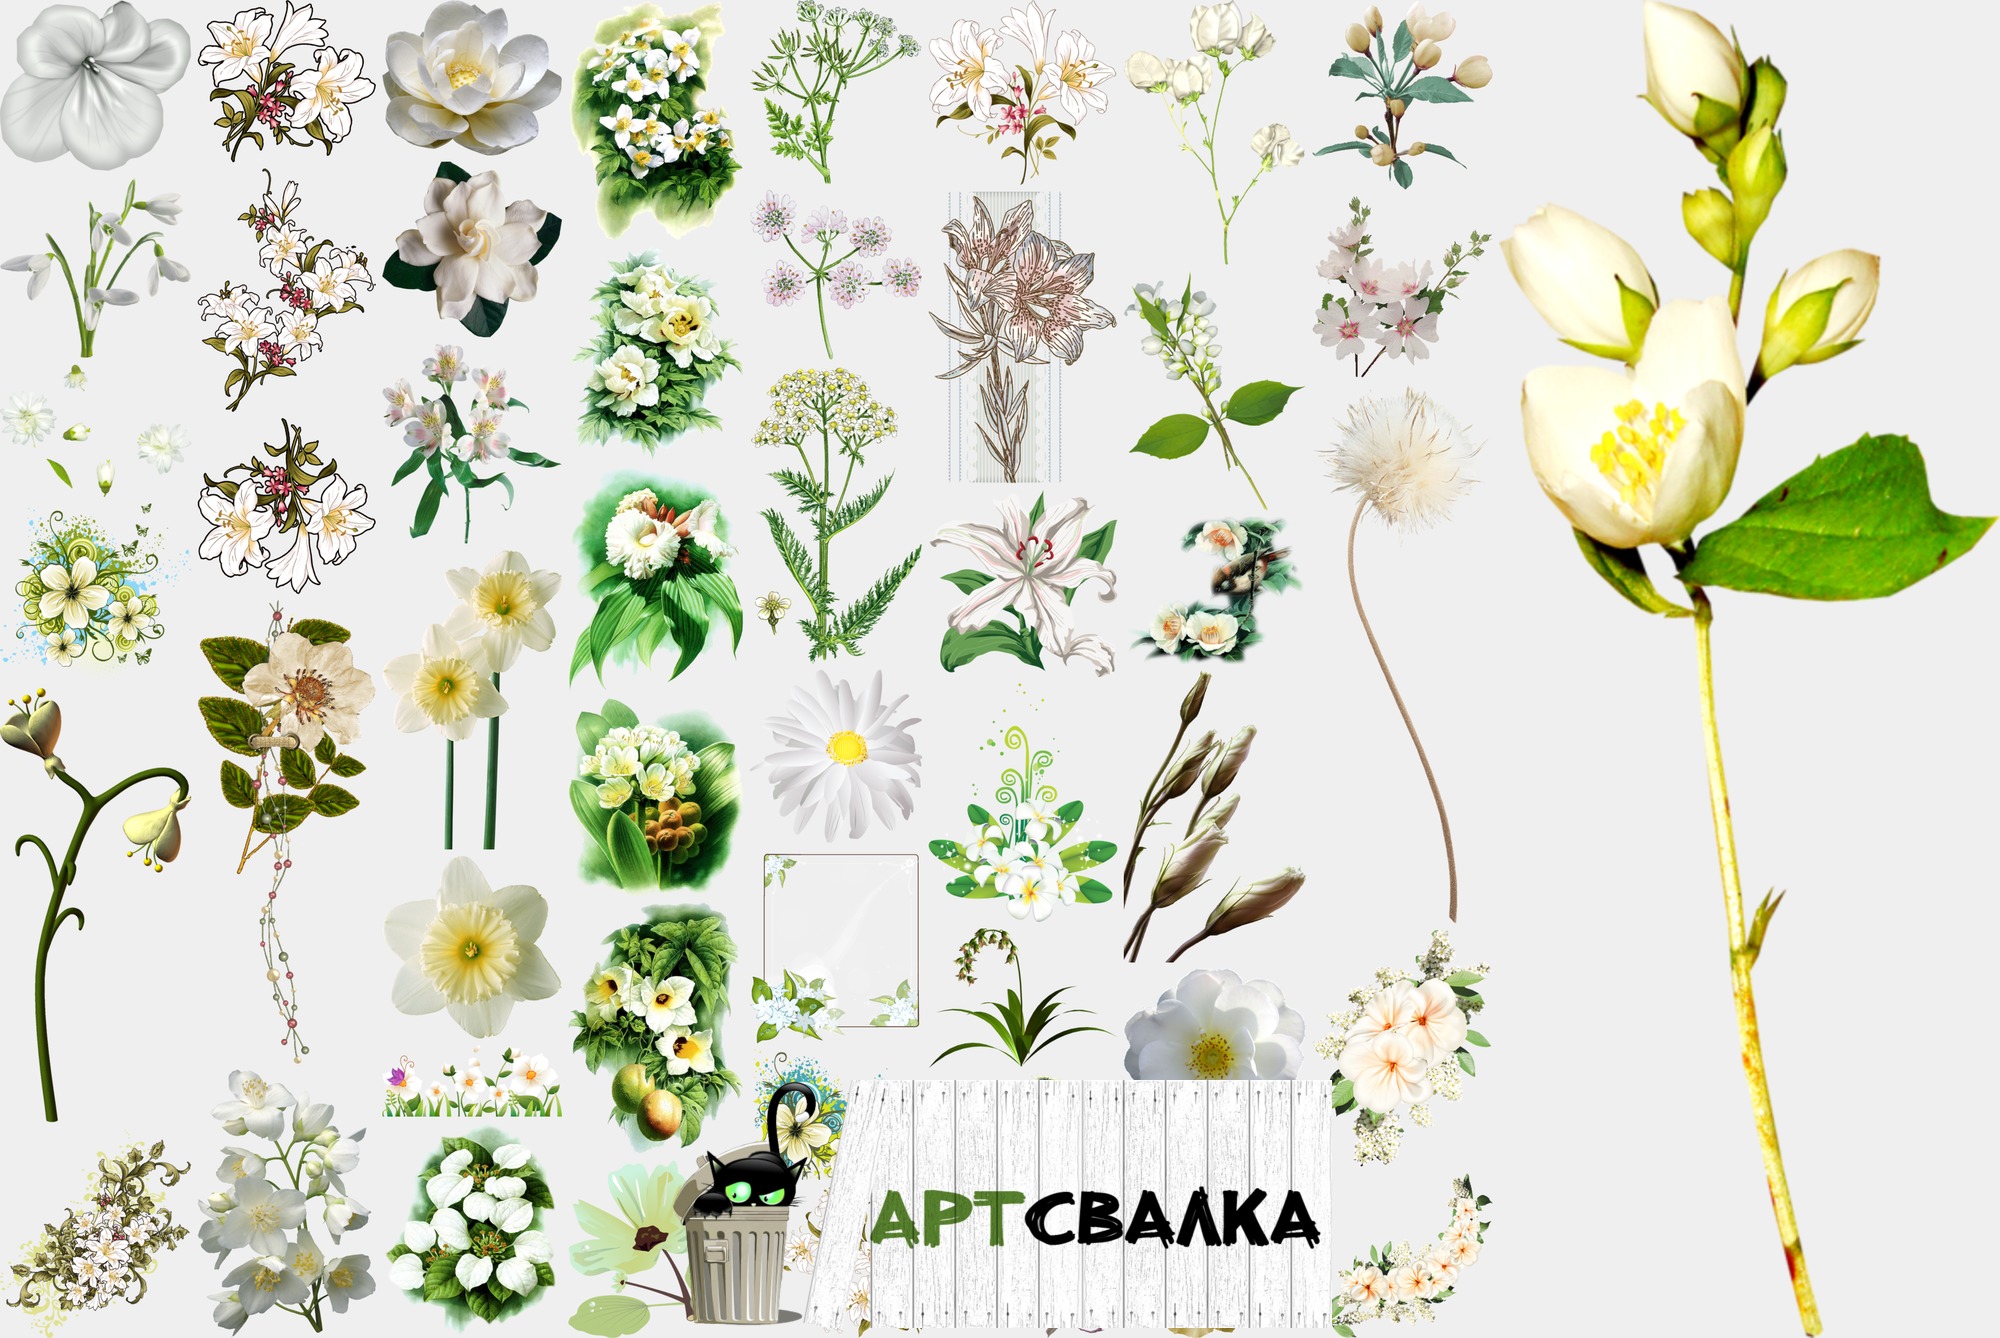 Белые цветы на прозрачном фоне. Часть 1 | White flowers on a transparent background. Part 1